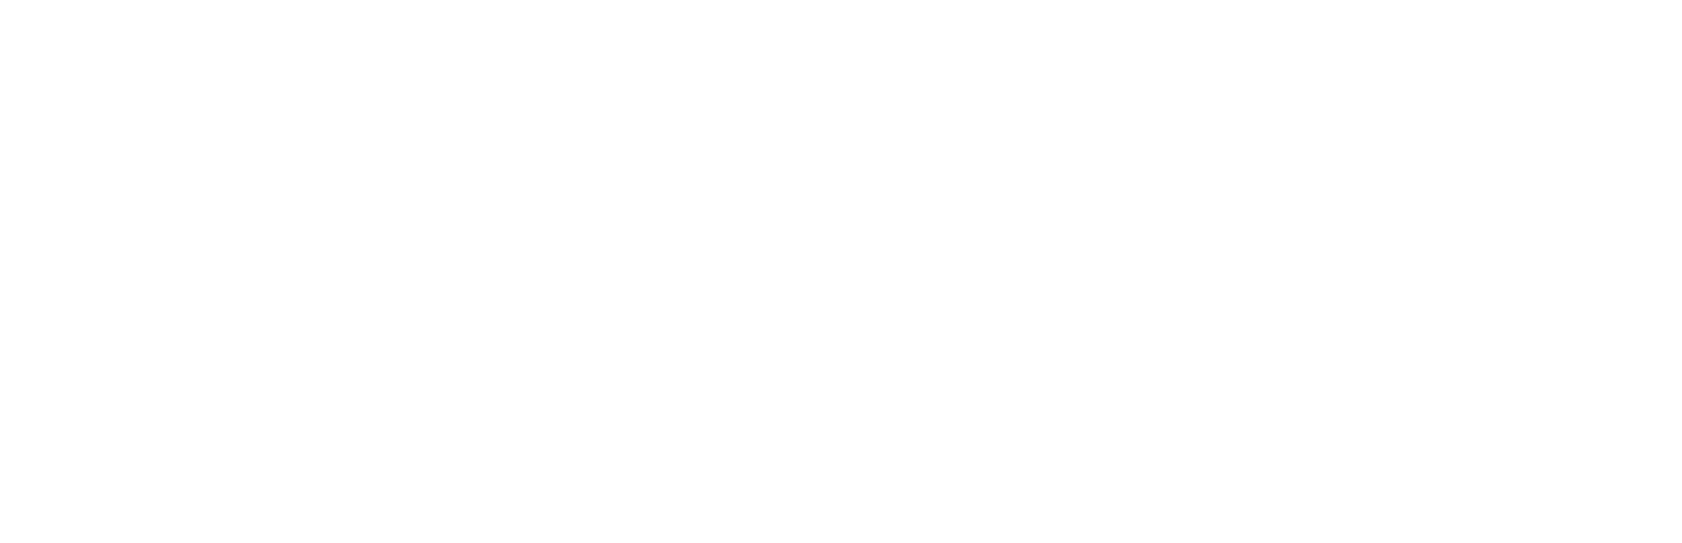 kazenoengawa_logo